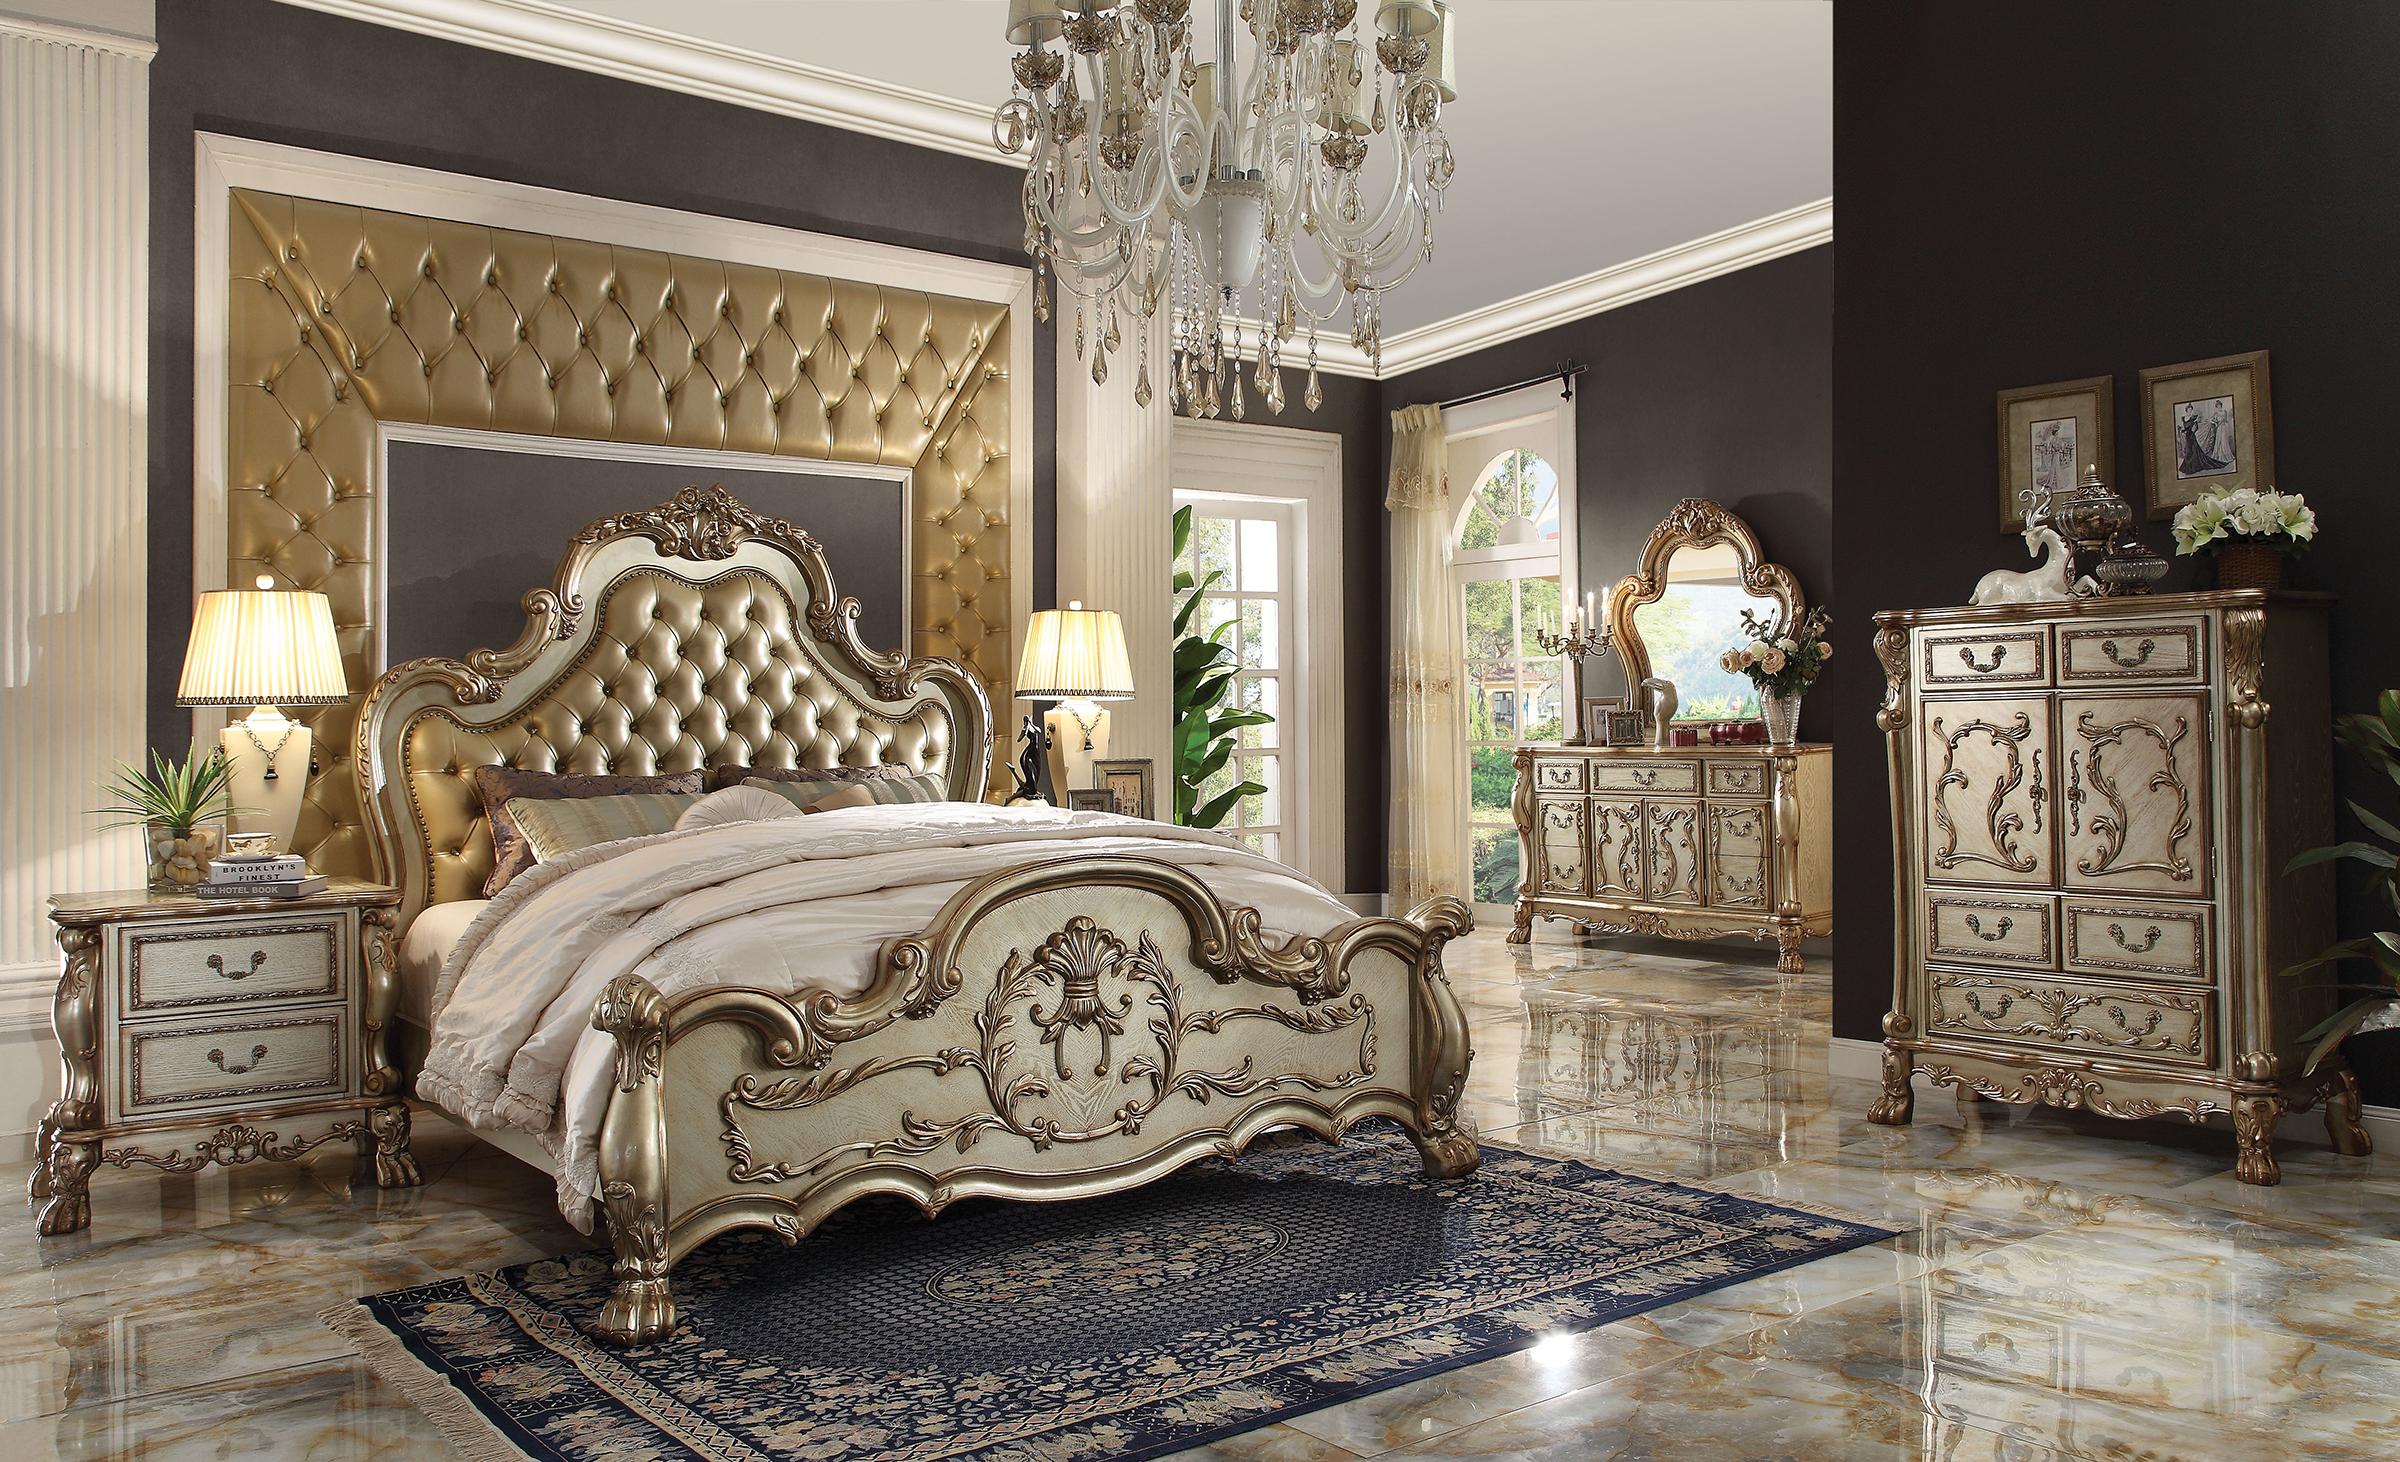 

    
Tufted Gold Patina Queen Bedroom Set 5Pcs Dresden 23160Q Acme Victorian Classic
